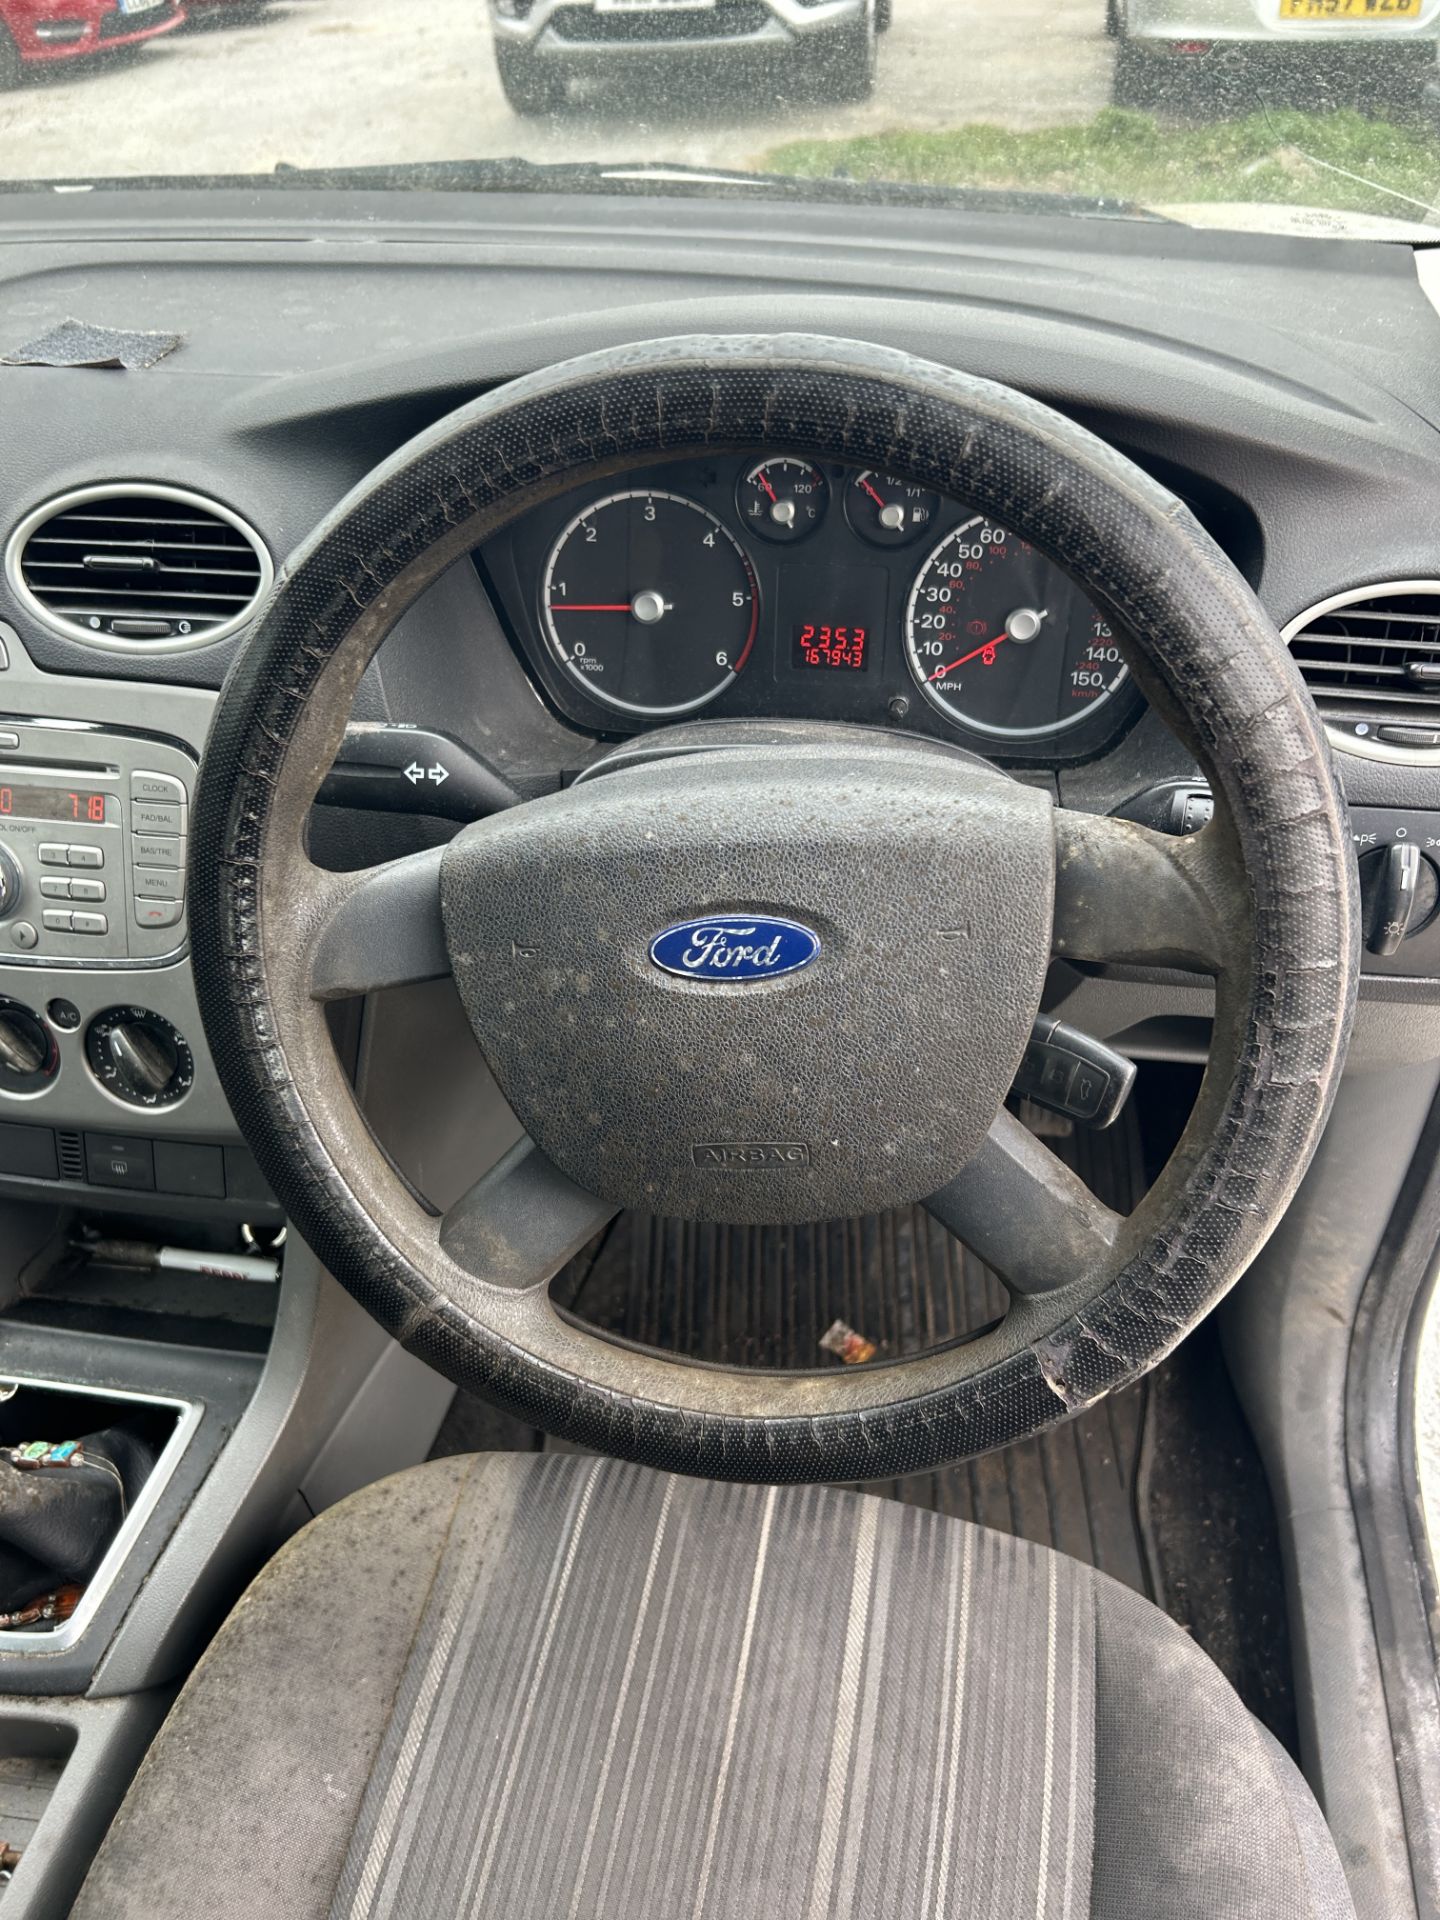 Ford Focus TD 90 Diesel Estate | YS08 CEF | 167,943 Miles | RUNNER - Bild 12 aus 14